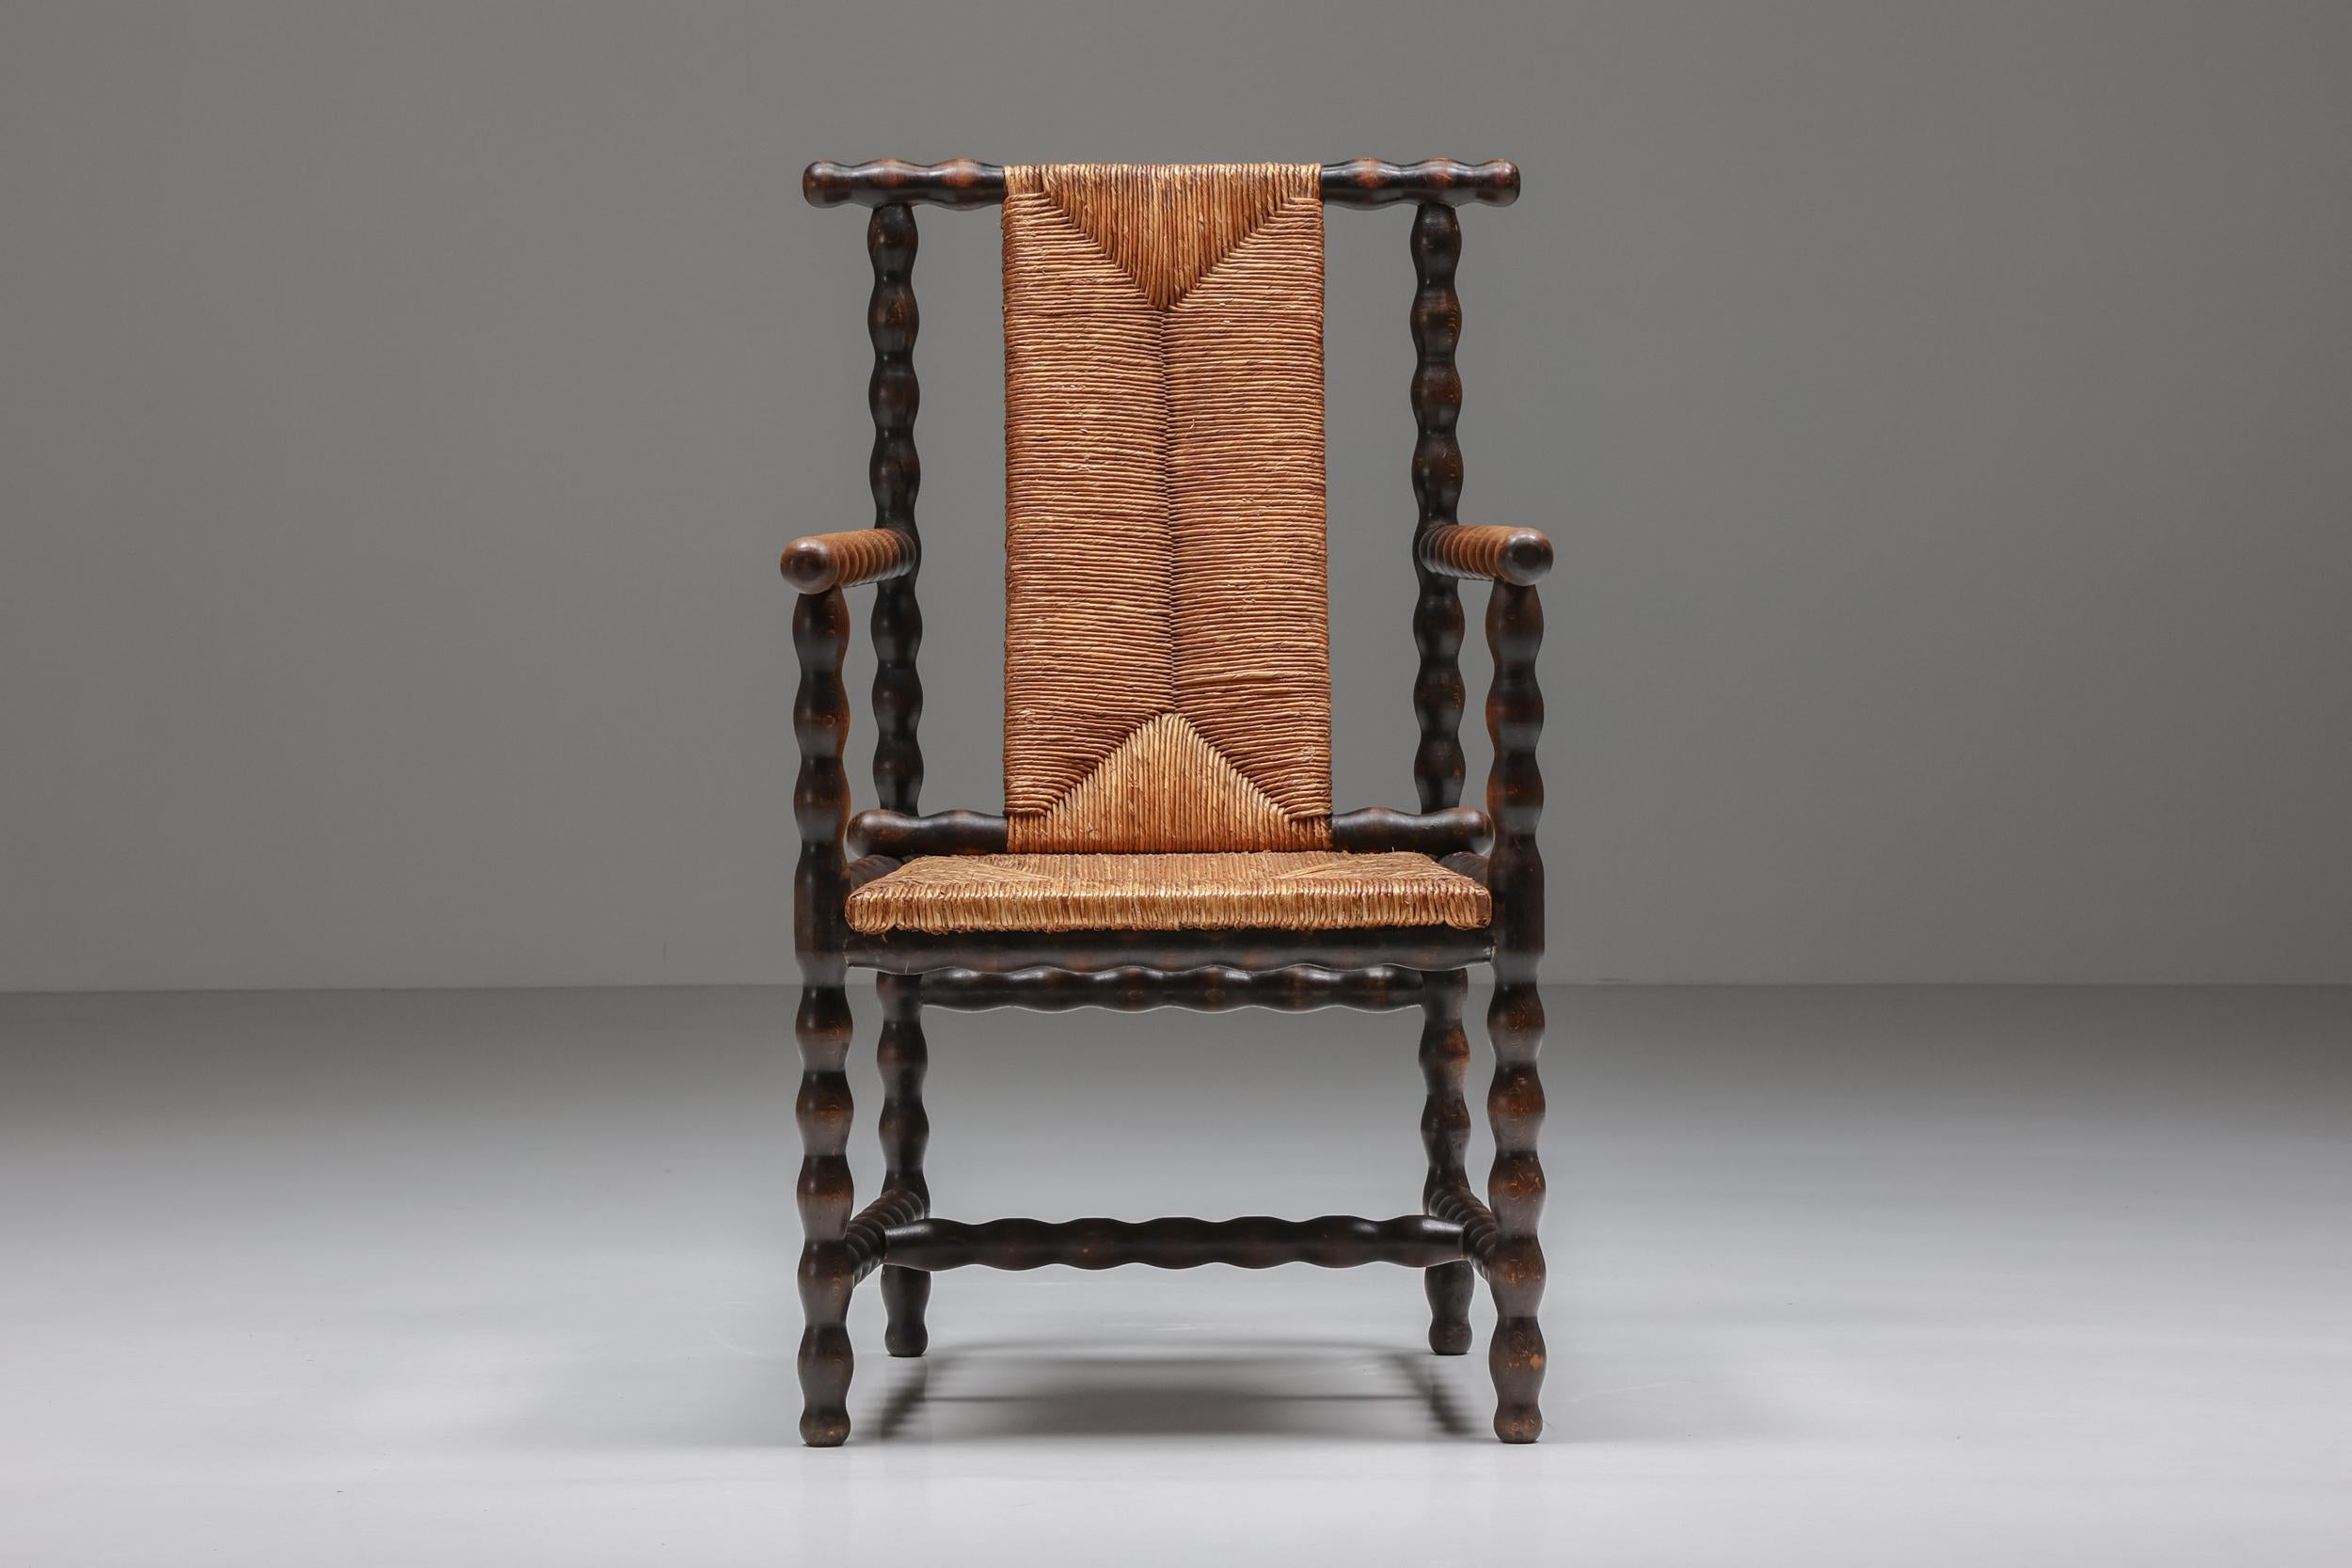 Autrichien Jugendstil Josef Zotti chaise en osier brun foncé ébénisé, Autriche, 1911